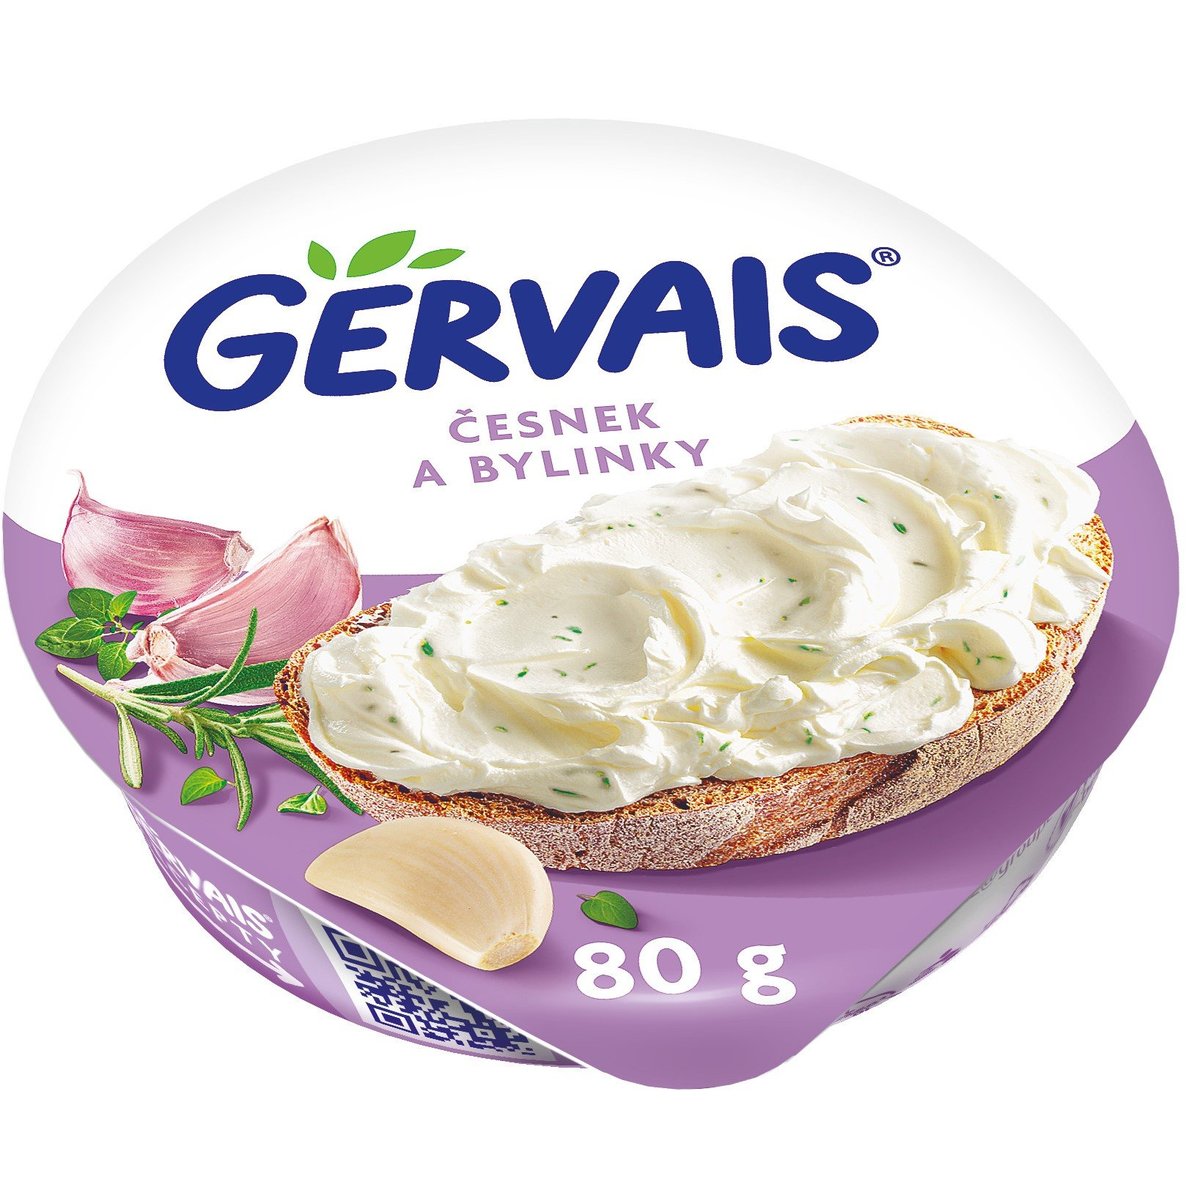 Gervais Original krémový tvarohový sýr s česnekem a bylinkami